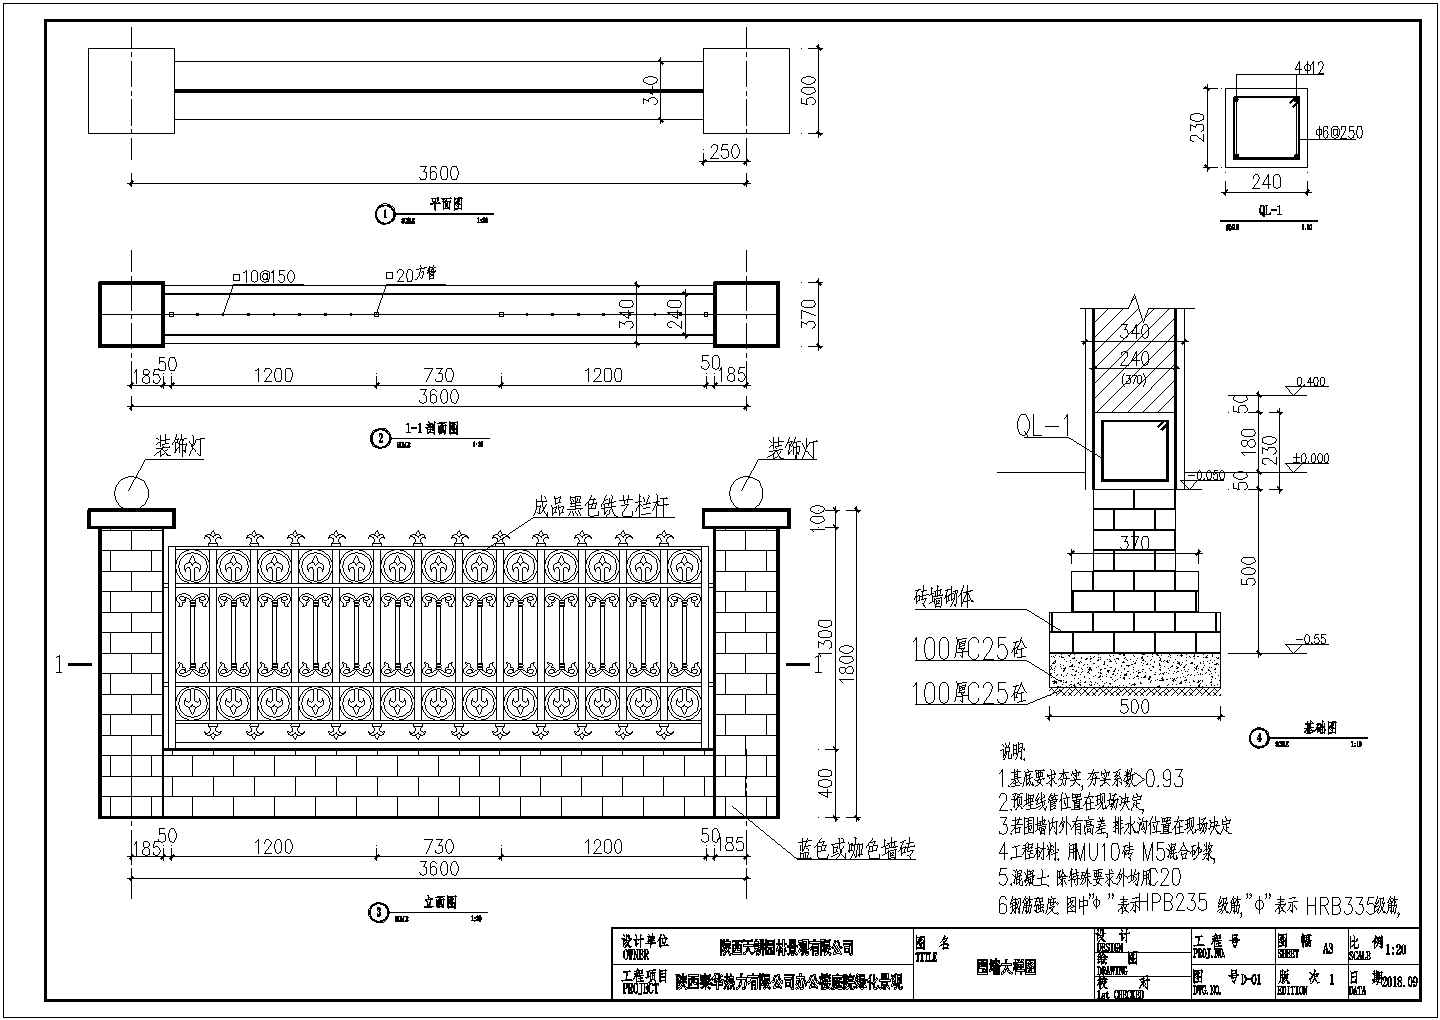 空心砖砌围墙建筑设计CAD施工图_通用节点详图__土木在线